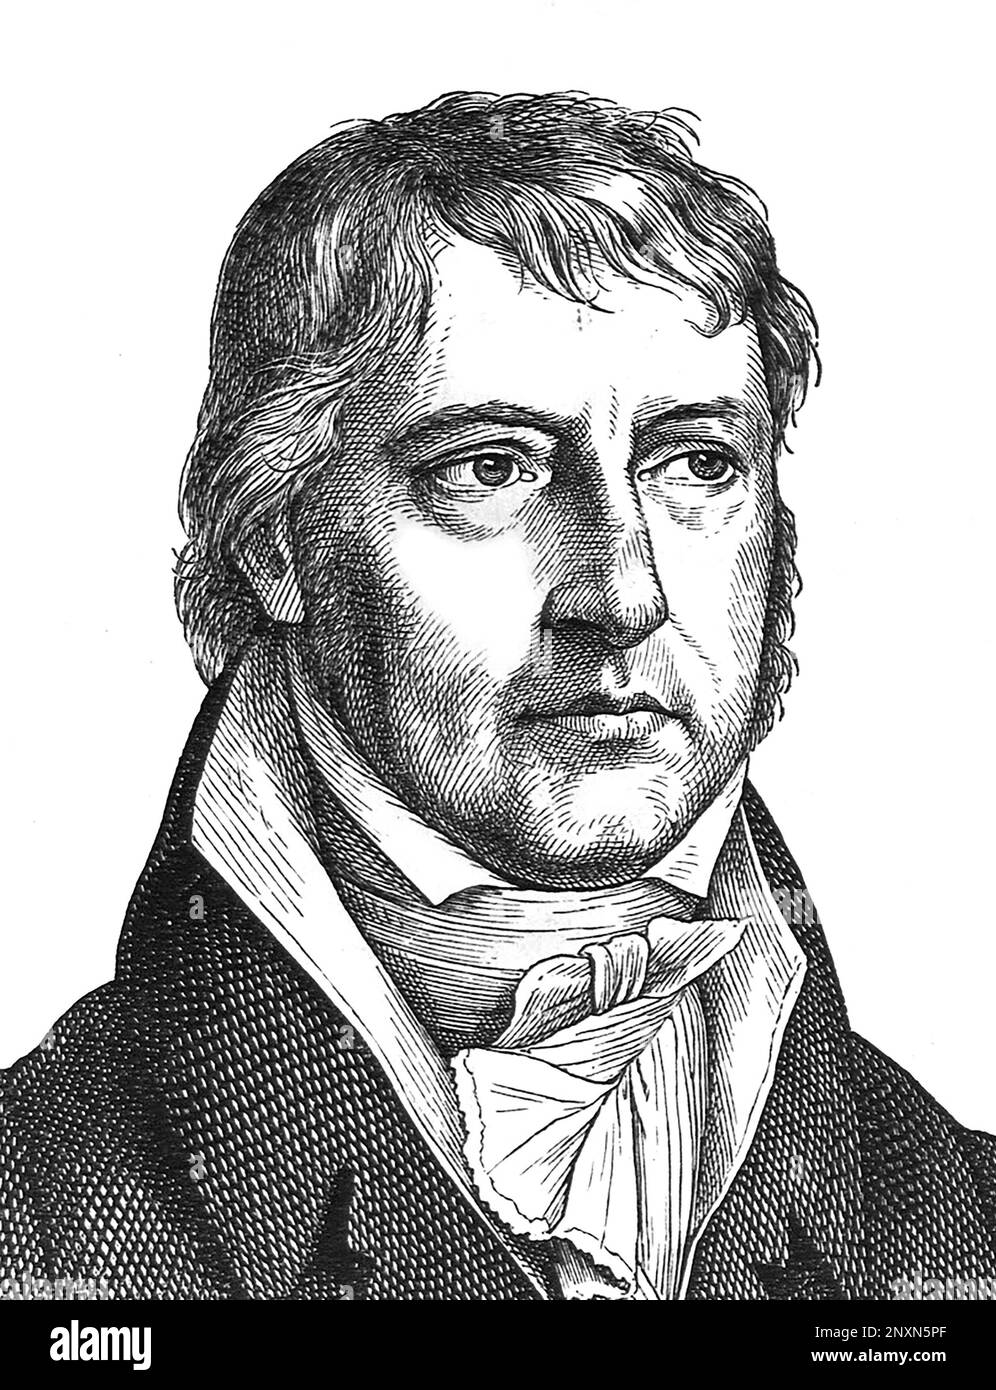 Georg Wilhelm Friedrich Hegel (1770-1831), deutscher Philosoph. Gravur von Hugo B√°rckner (1818-1897). Stockfoto